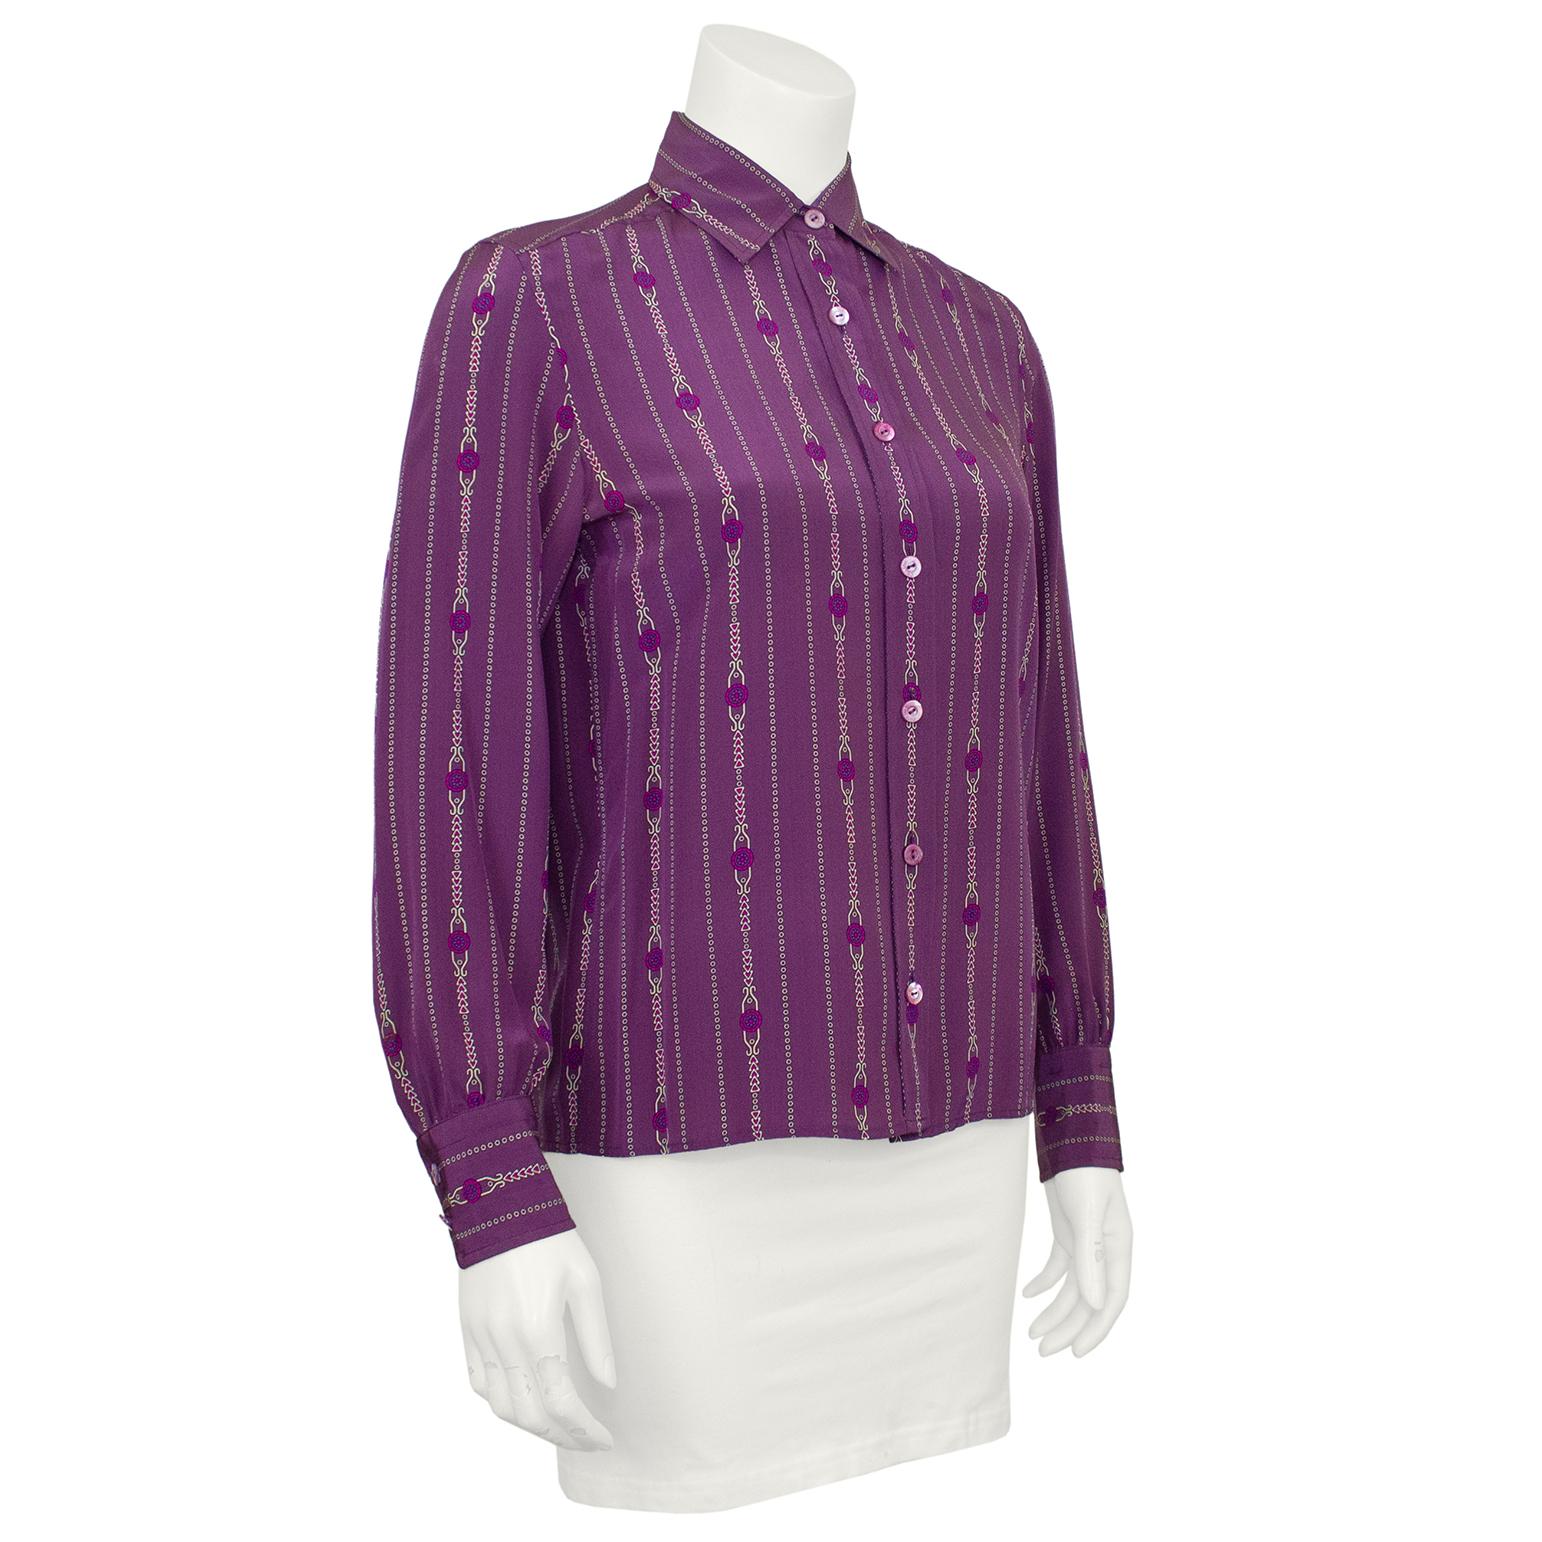 Magnifique blouse en soie de Celine datant des années 1970. La blouse violette est ornée d'un imprimé unique de chaînes en crème et en magenta. Boutons sur le devant. En excellent état, taille US 2/4, marqué FR 38

Épaule 15